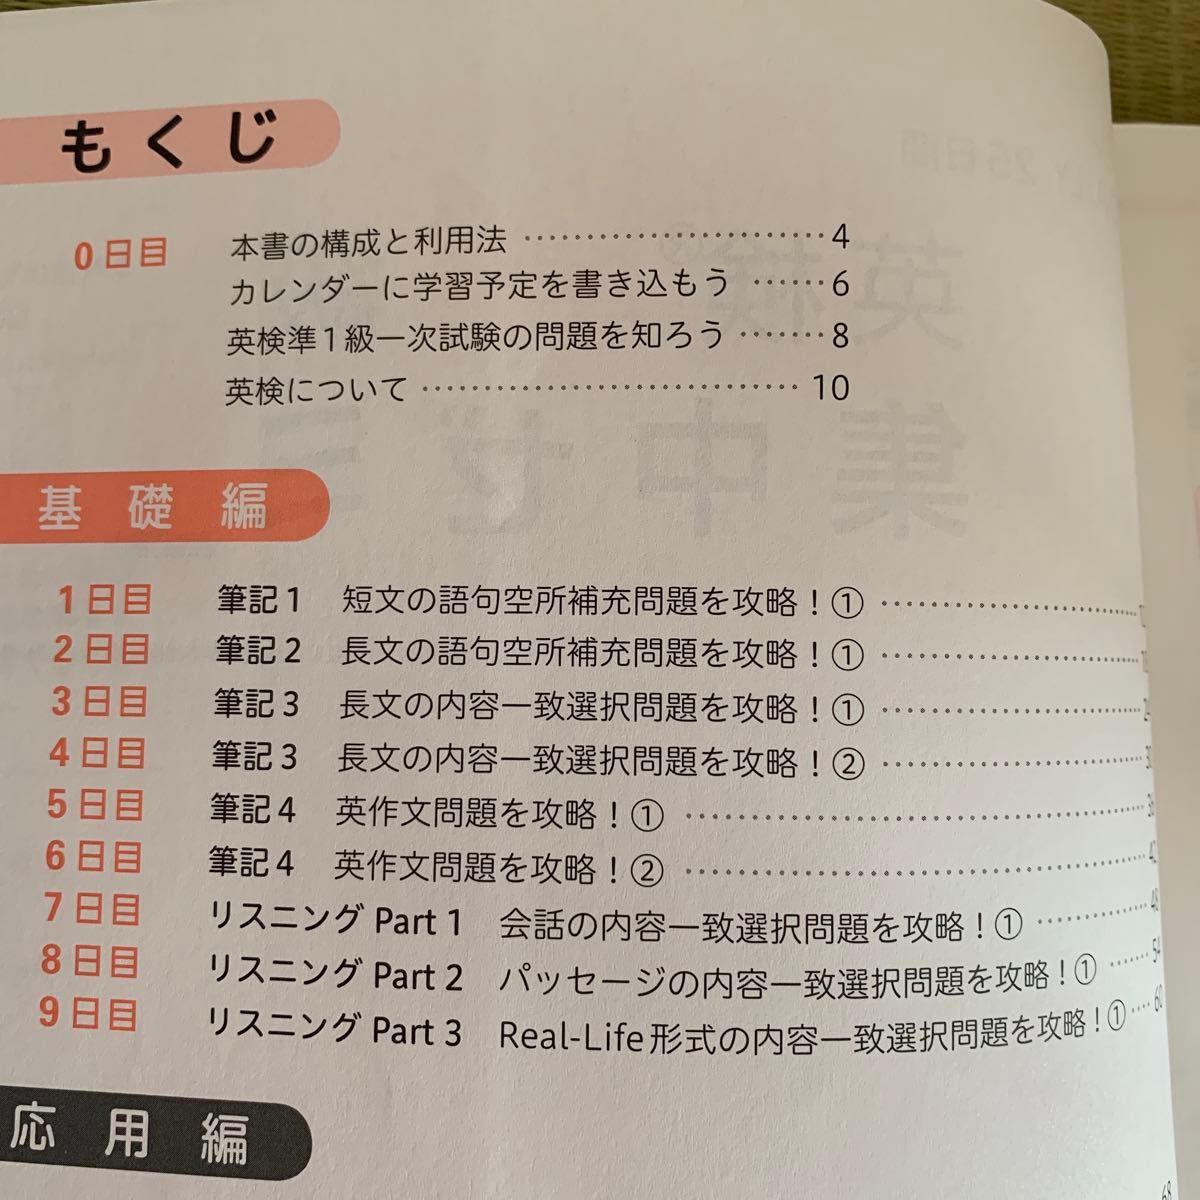 「DAILY25日間英検準1級集中ゼミ : 一次試験対策」旺文社